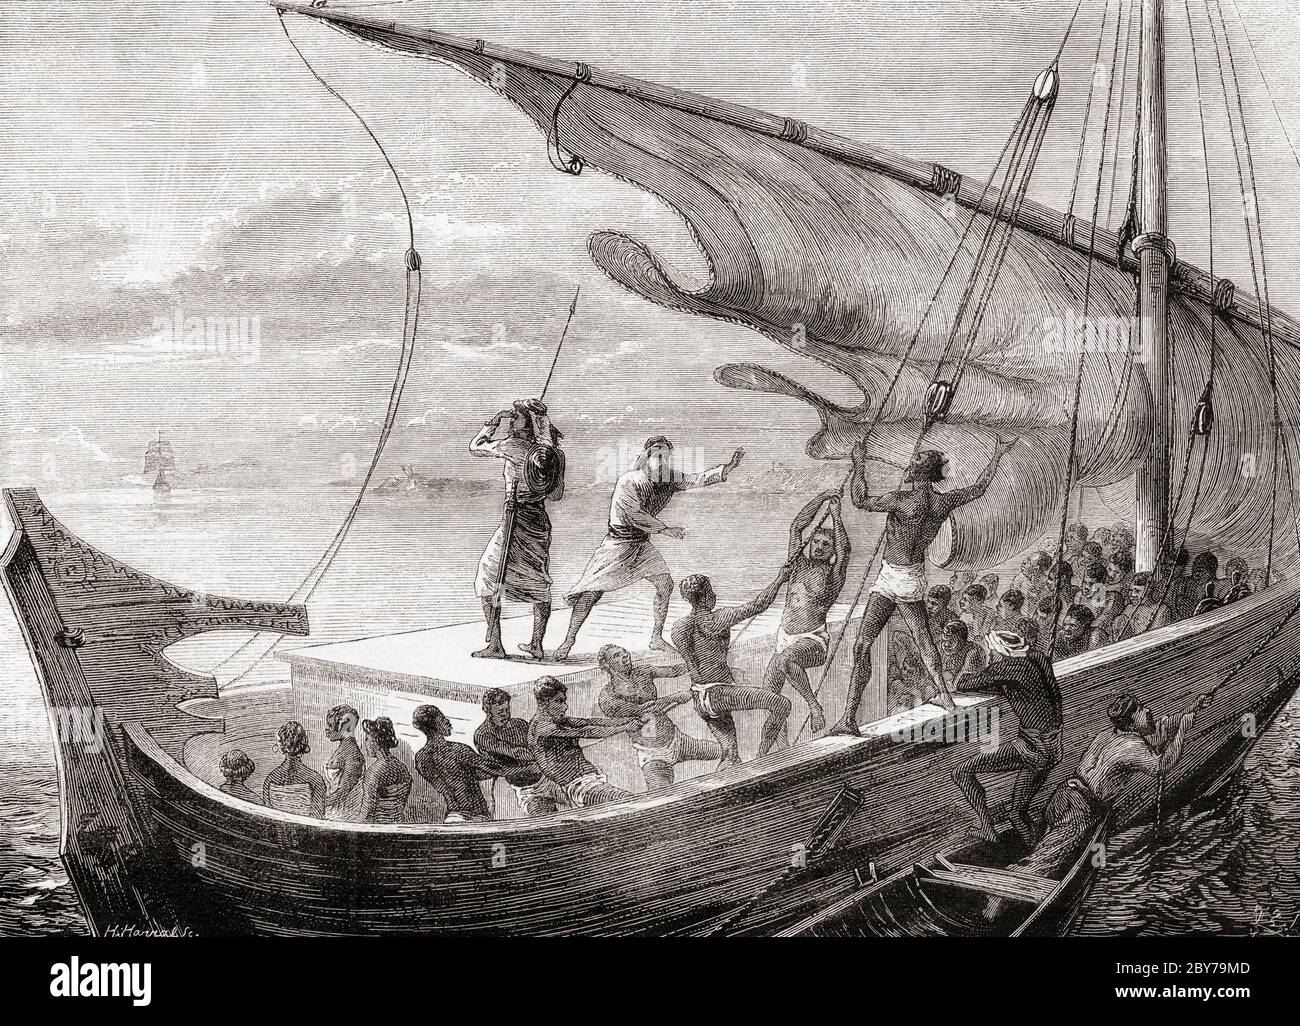 Arabisches Sklavenschiff im Roten Meer, Mitte des 19. Jahrhunderts. Die Crew zeigt Bestürzung über die Annäherung eines britischen Kriegsmanns. Nach einem Stich von Horace Harral, veröffentlicht in The Graphic, 25. April 1874. Stockfoto